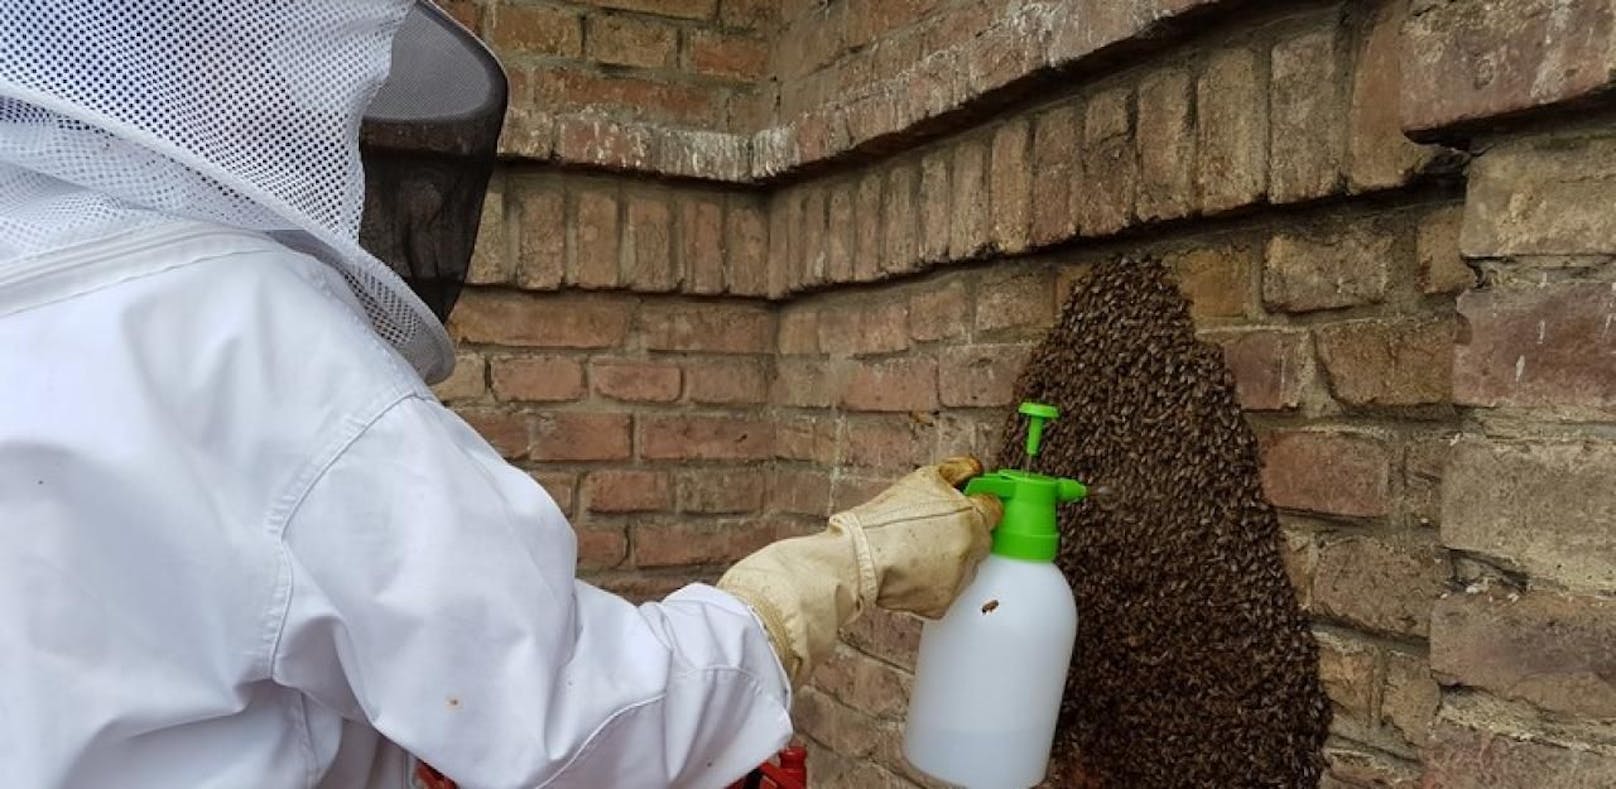 Bienen nahmen Wohnhaus erneut in Besitz